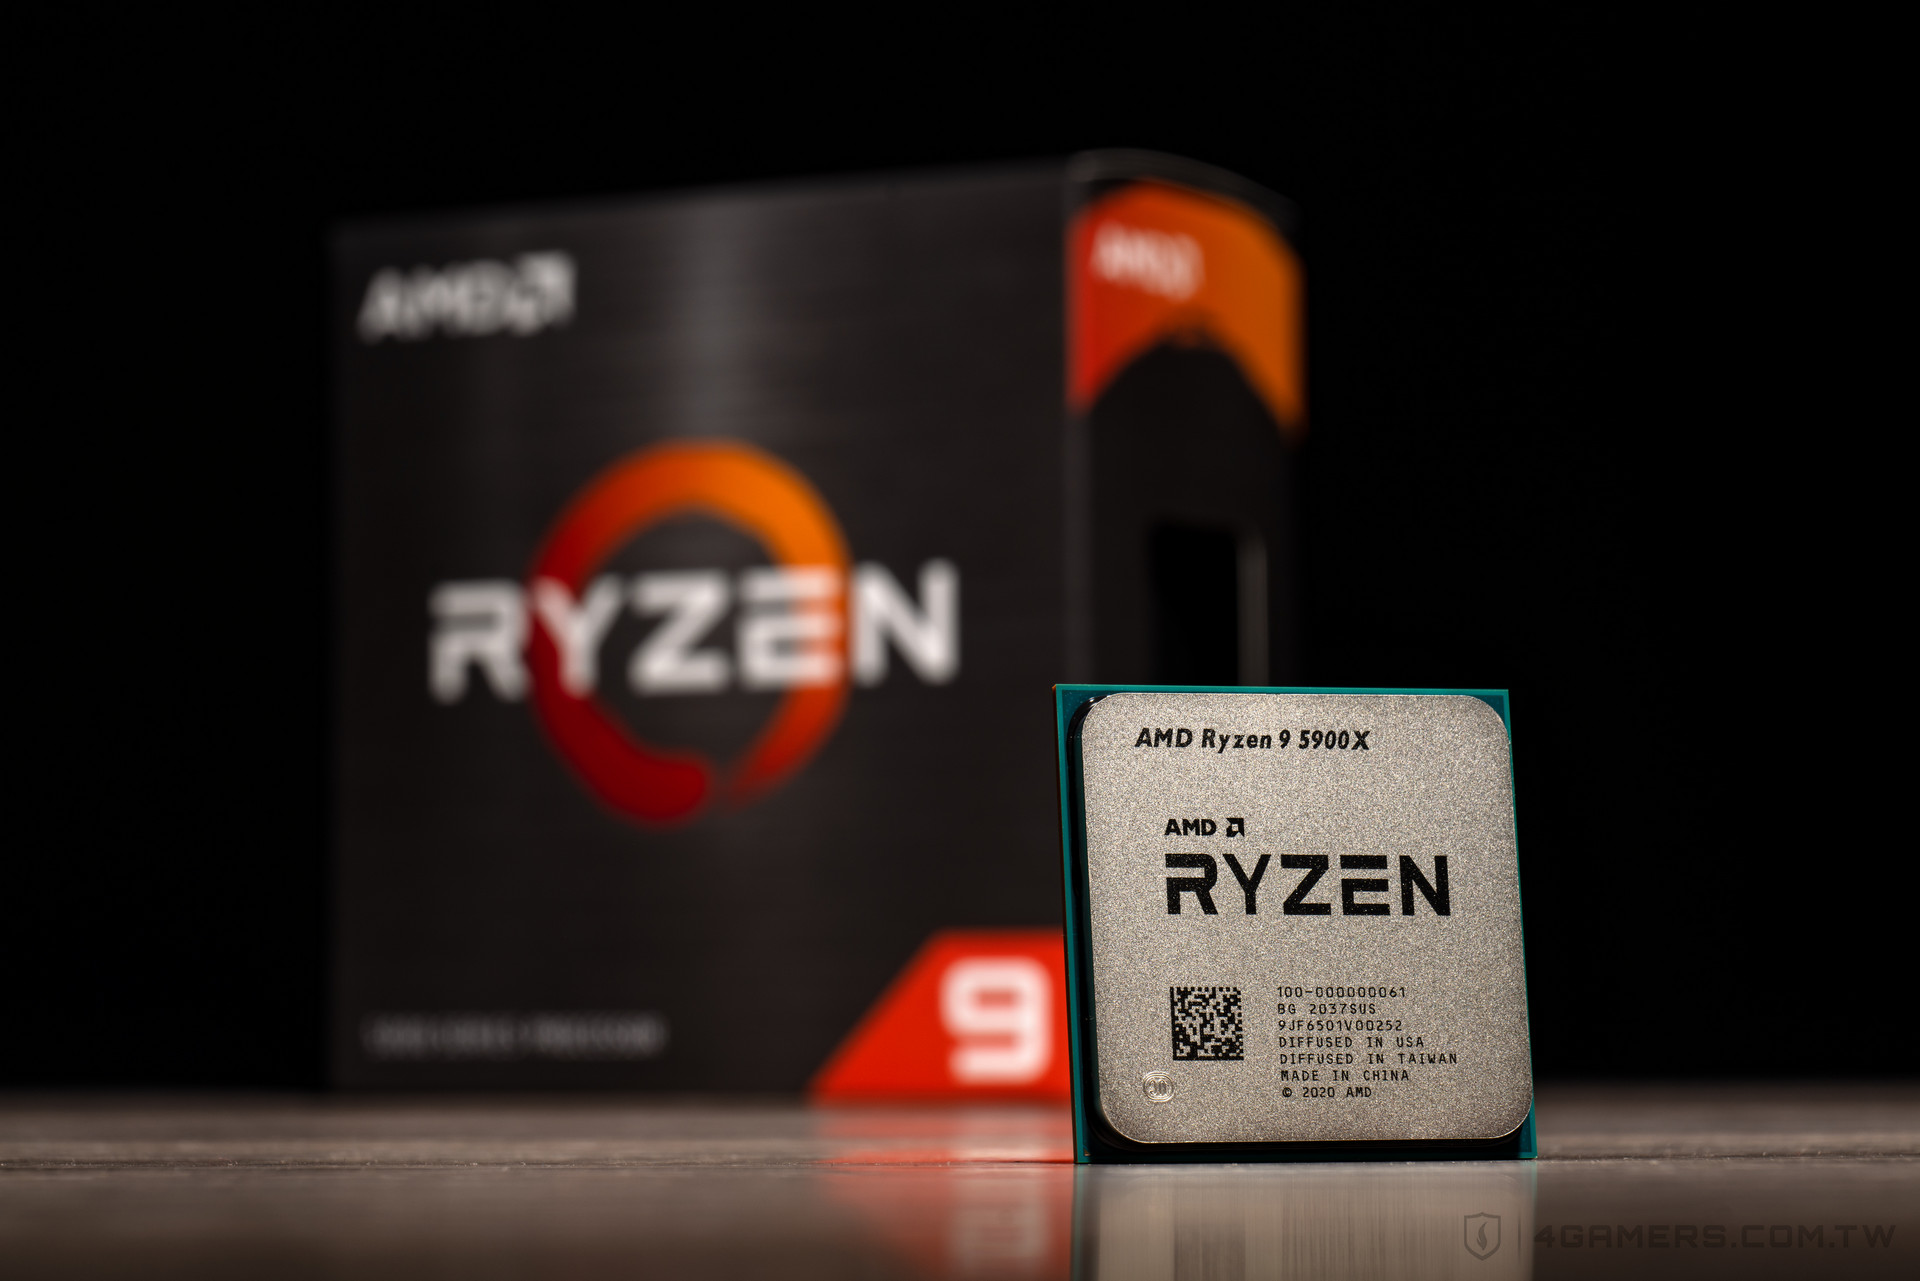 Купить процессор ryzen 9. Процессор АМД 9 5900. Процессор AMD Ryzen 9. Процессор AMD Ryzen 9 Vermeer. Процессор AMD Ryzen 7 5800x.